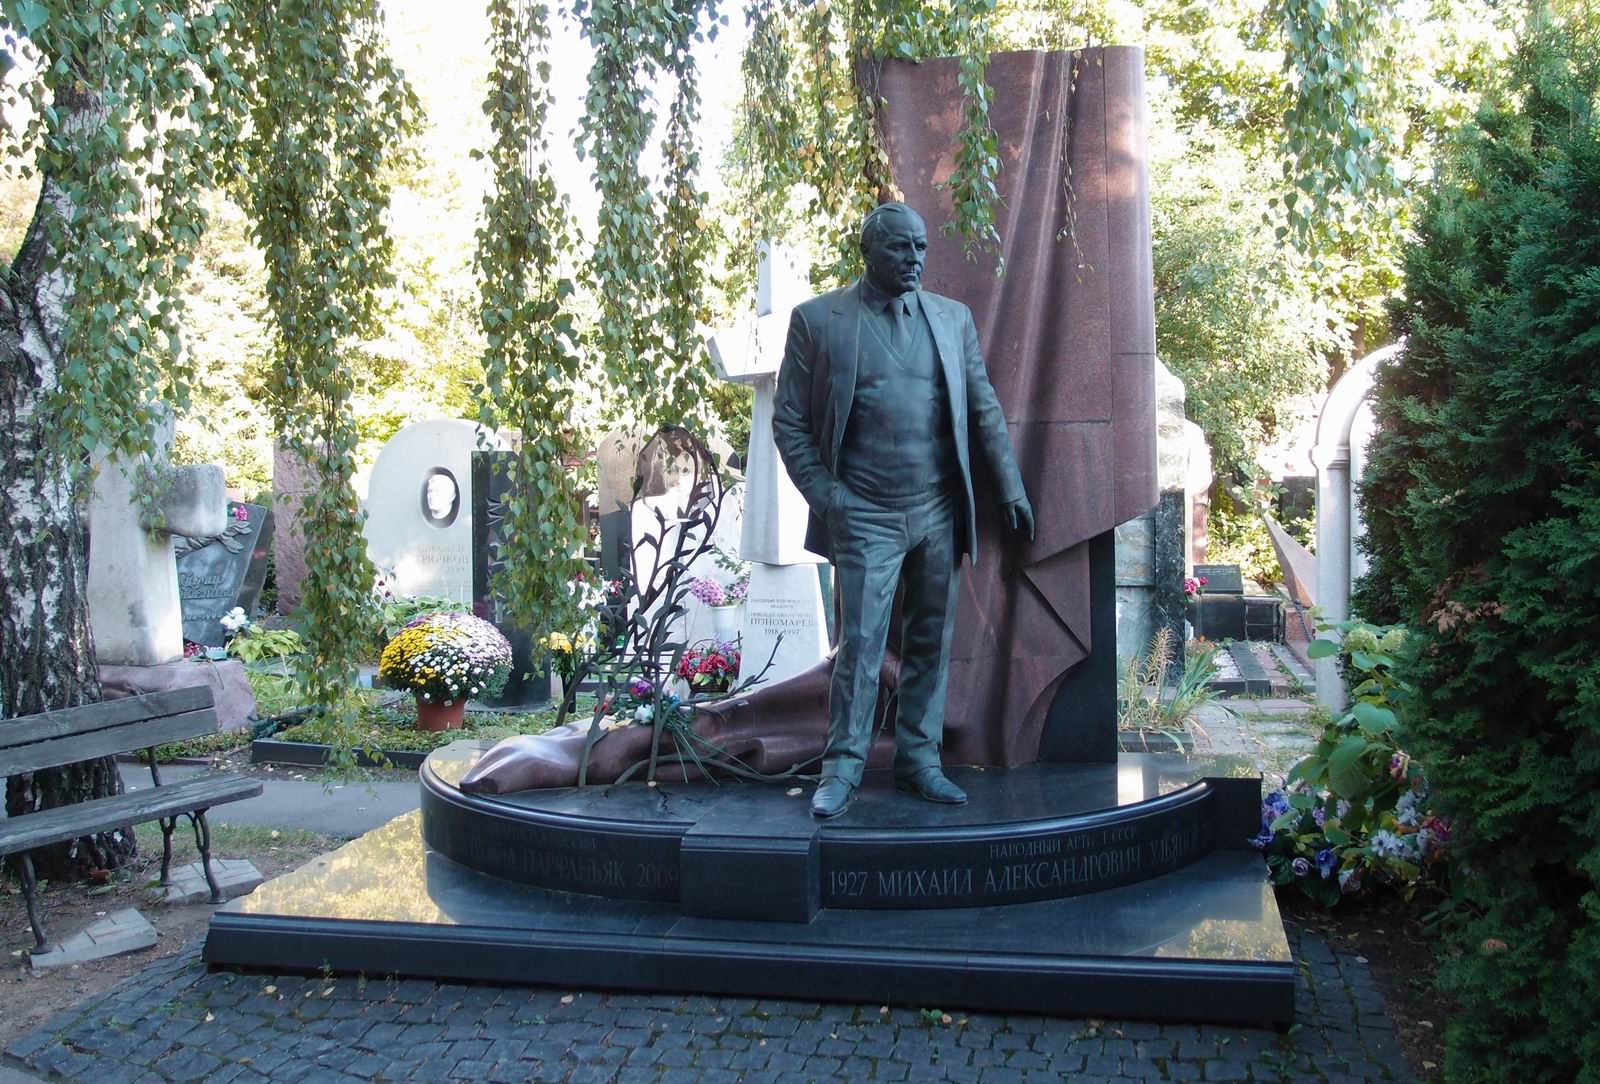 Памятник на могиле Ульянова М.А. (1927-2007), ск. Б.Петров, П.Гиль, арх. Г.Пейчев, на Новодевичьем кладбище (10-10-1).